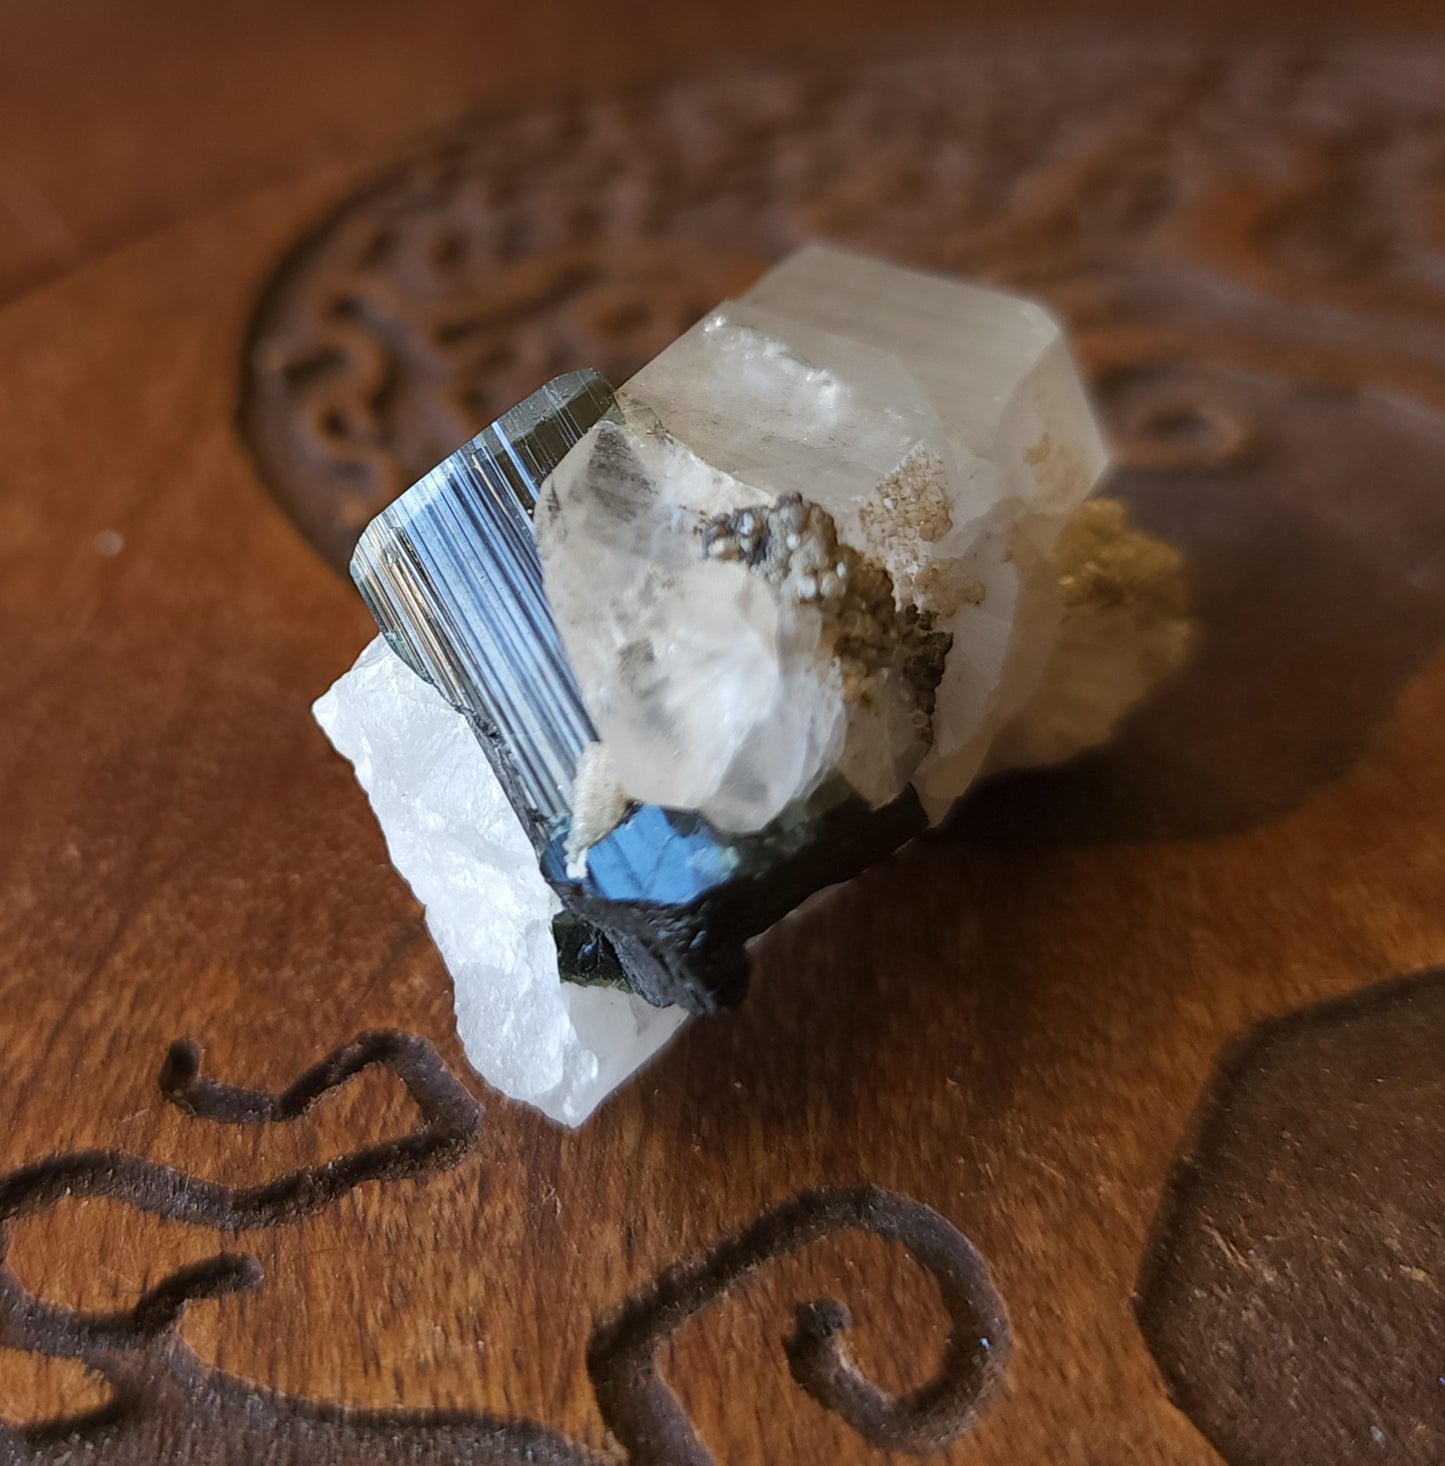 Blue Cap Tourmaline in Quartz with Cleavelandite